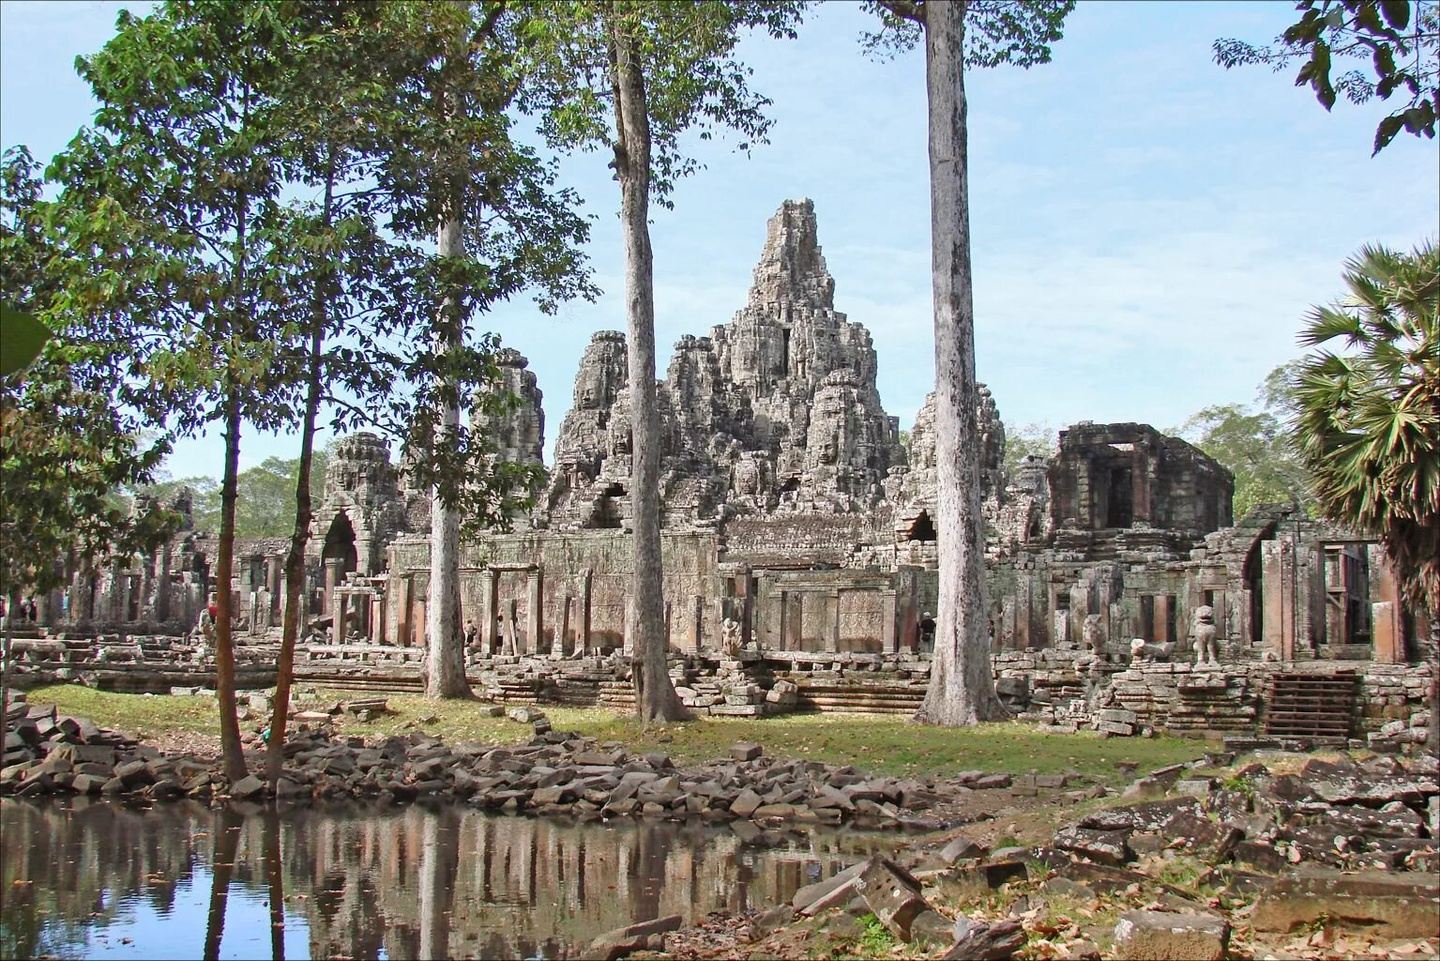 Saigon to Angkor Wat